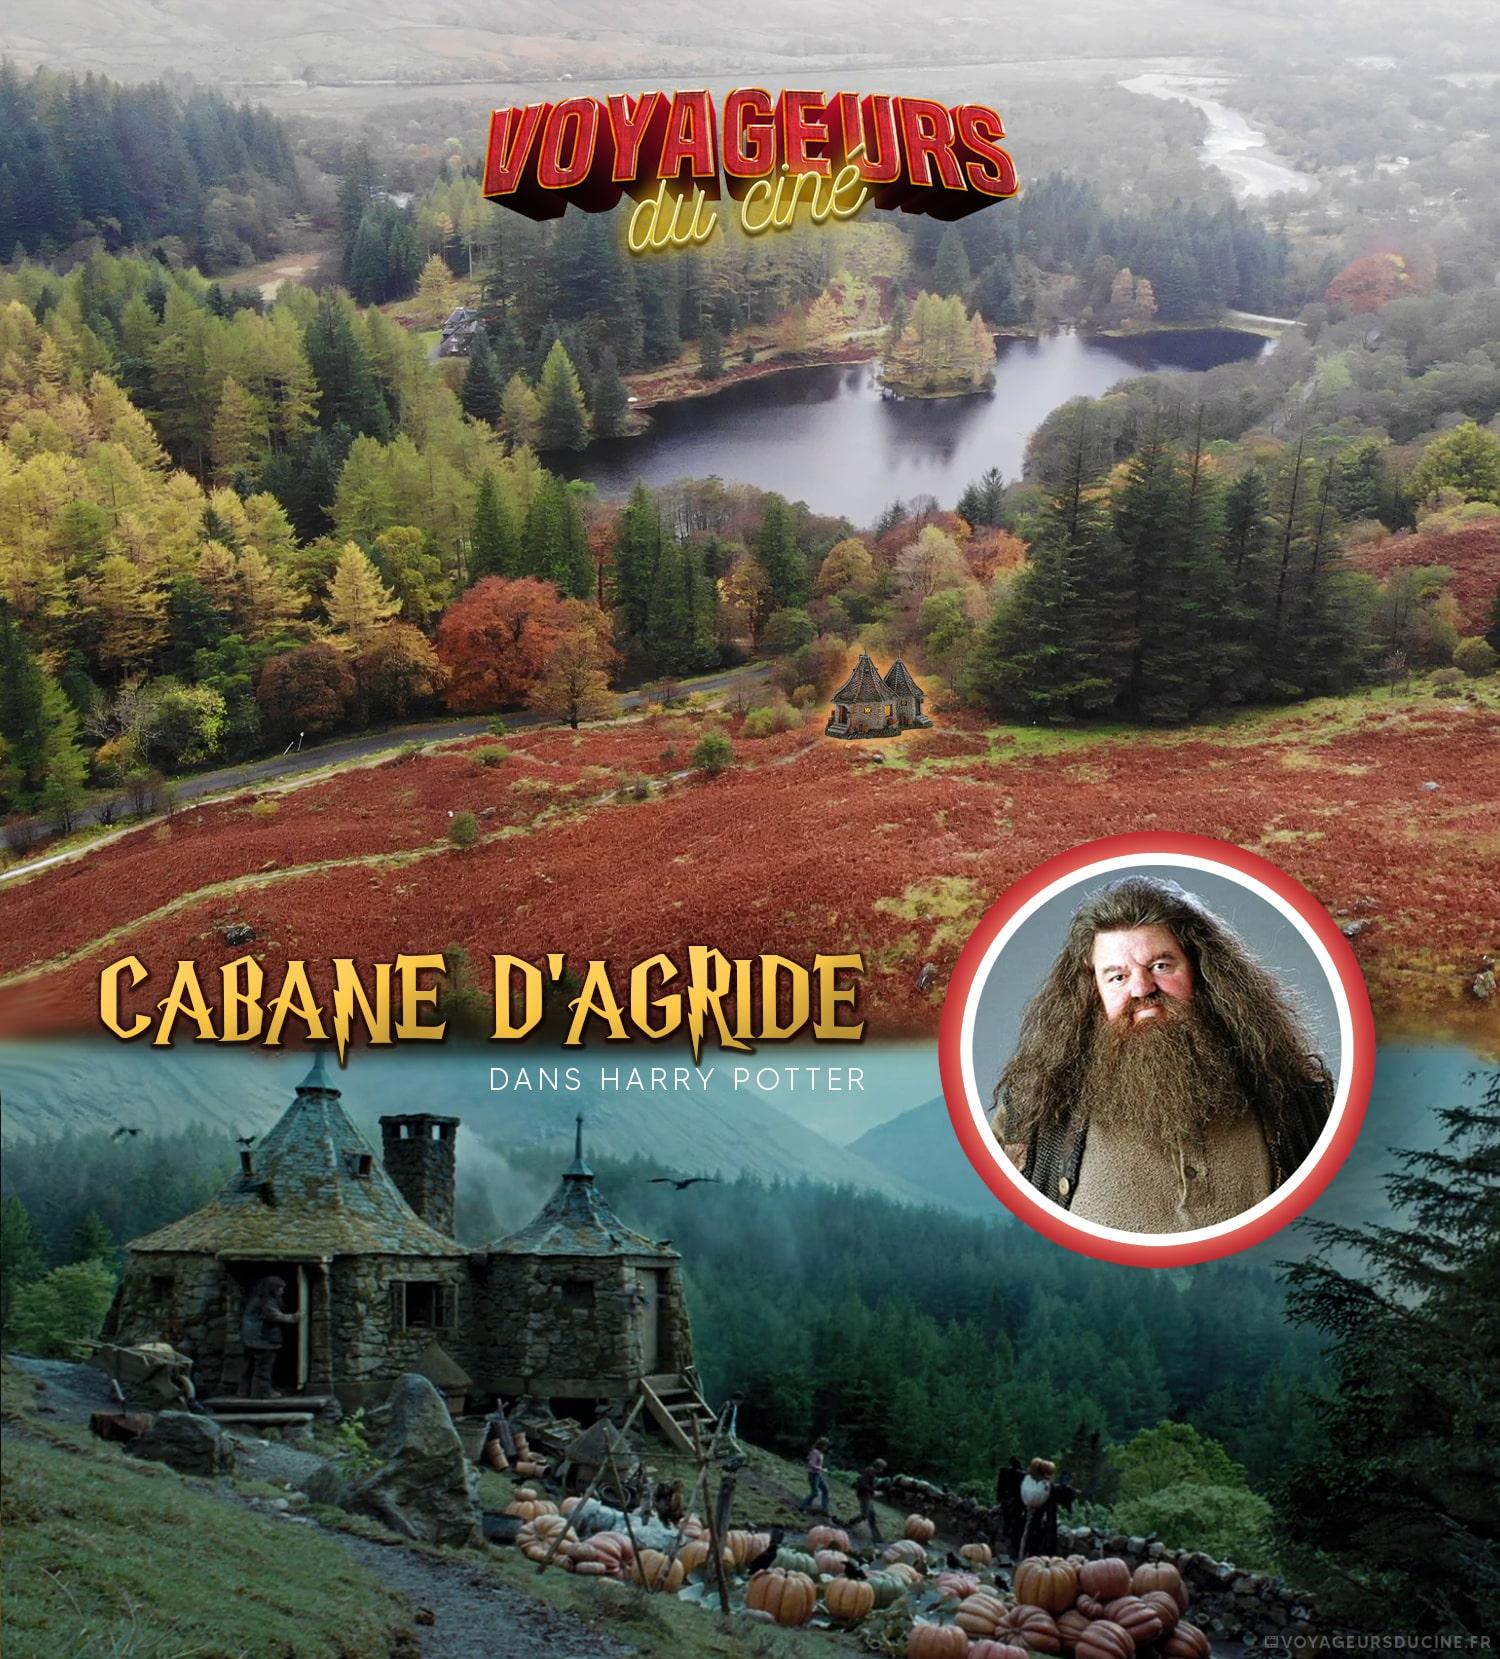 La cabane de Hagrid dans Harry Potter en ecosse Glenco